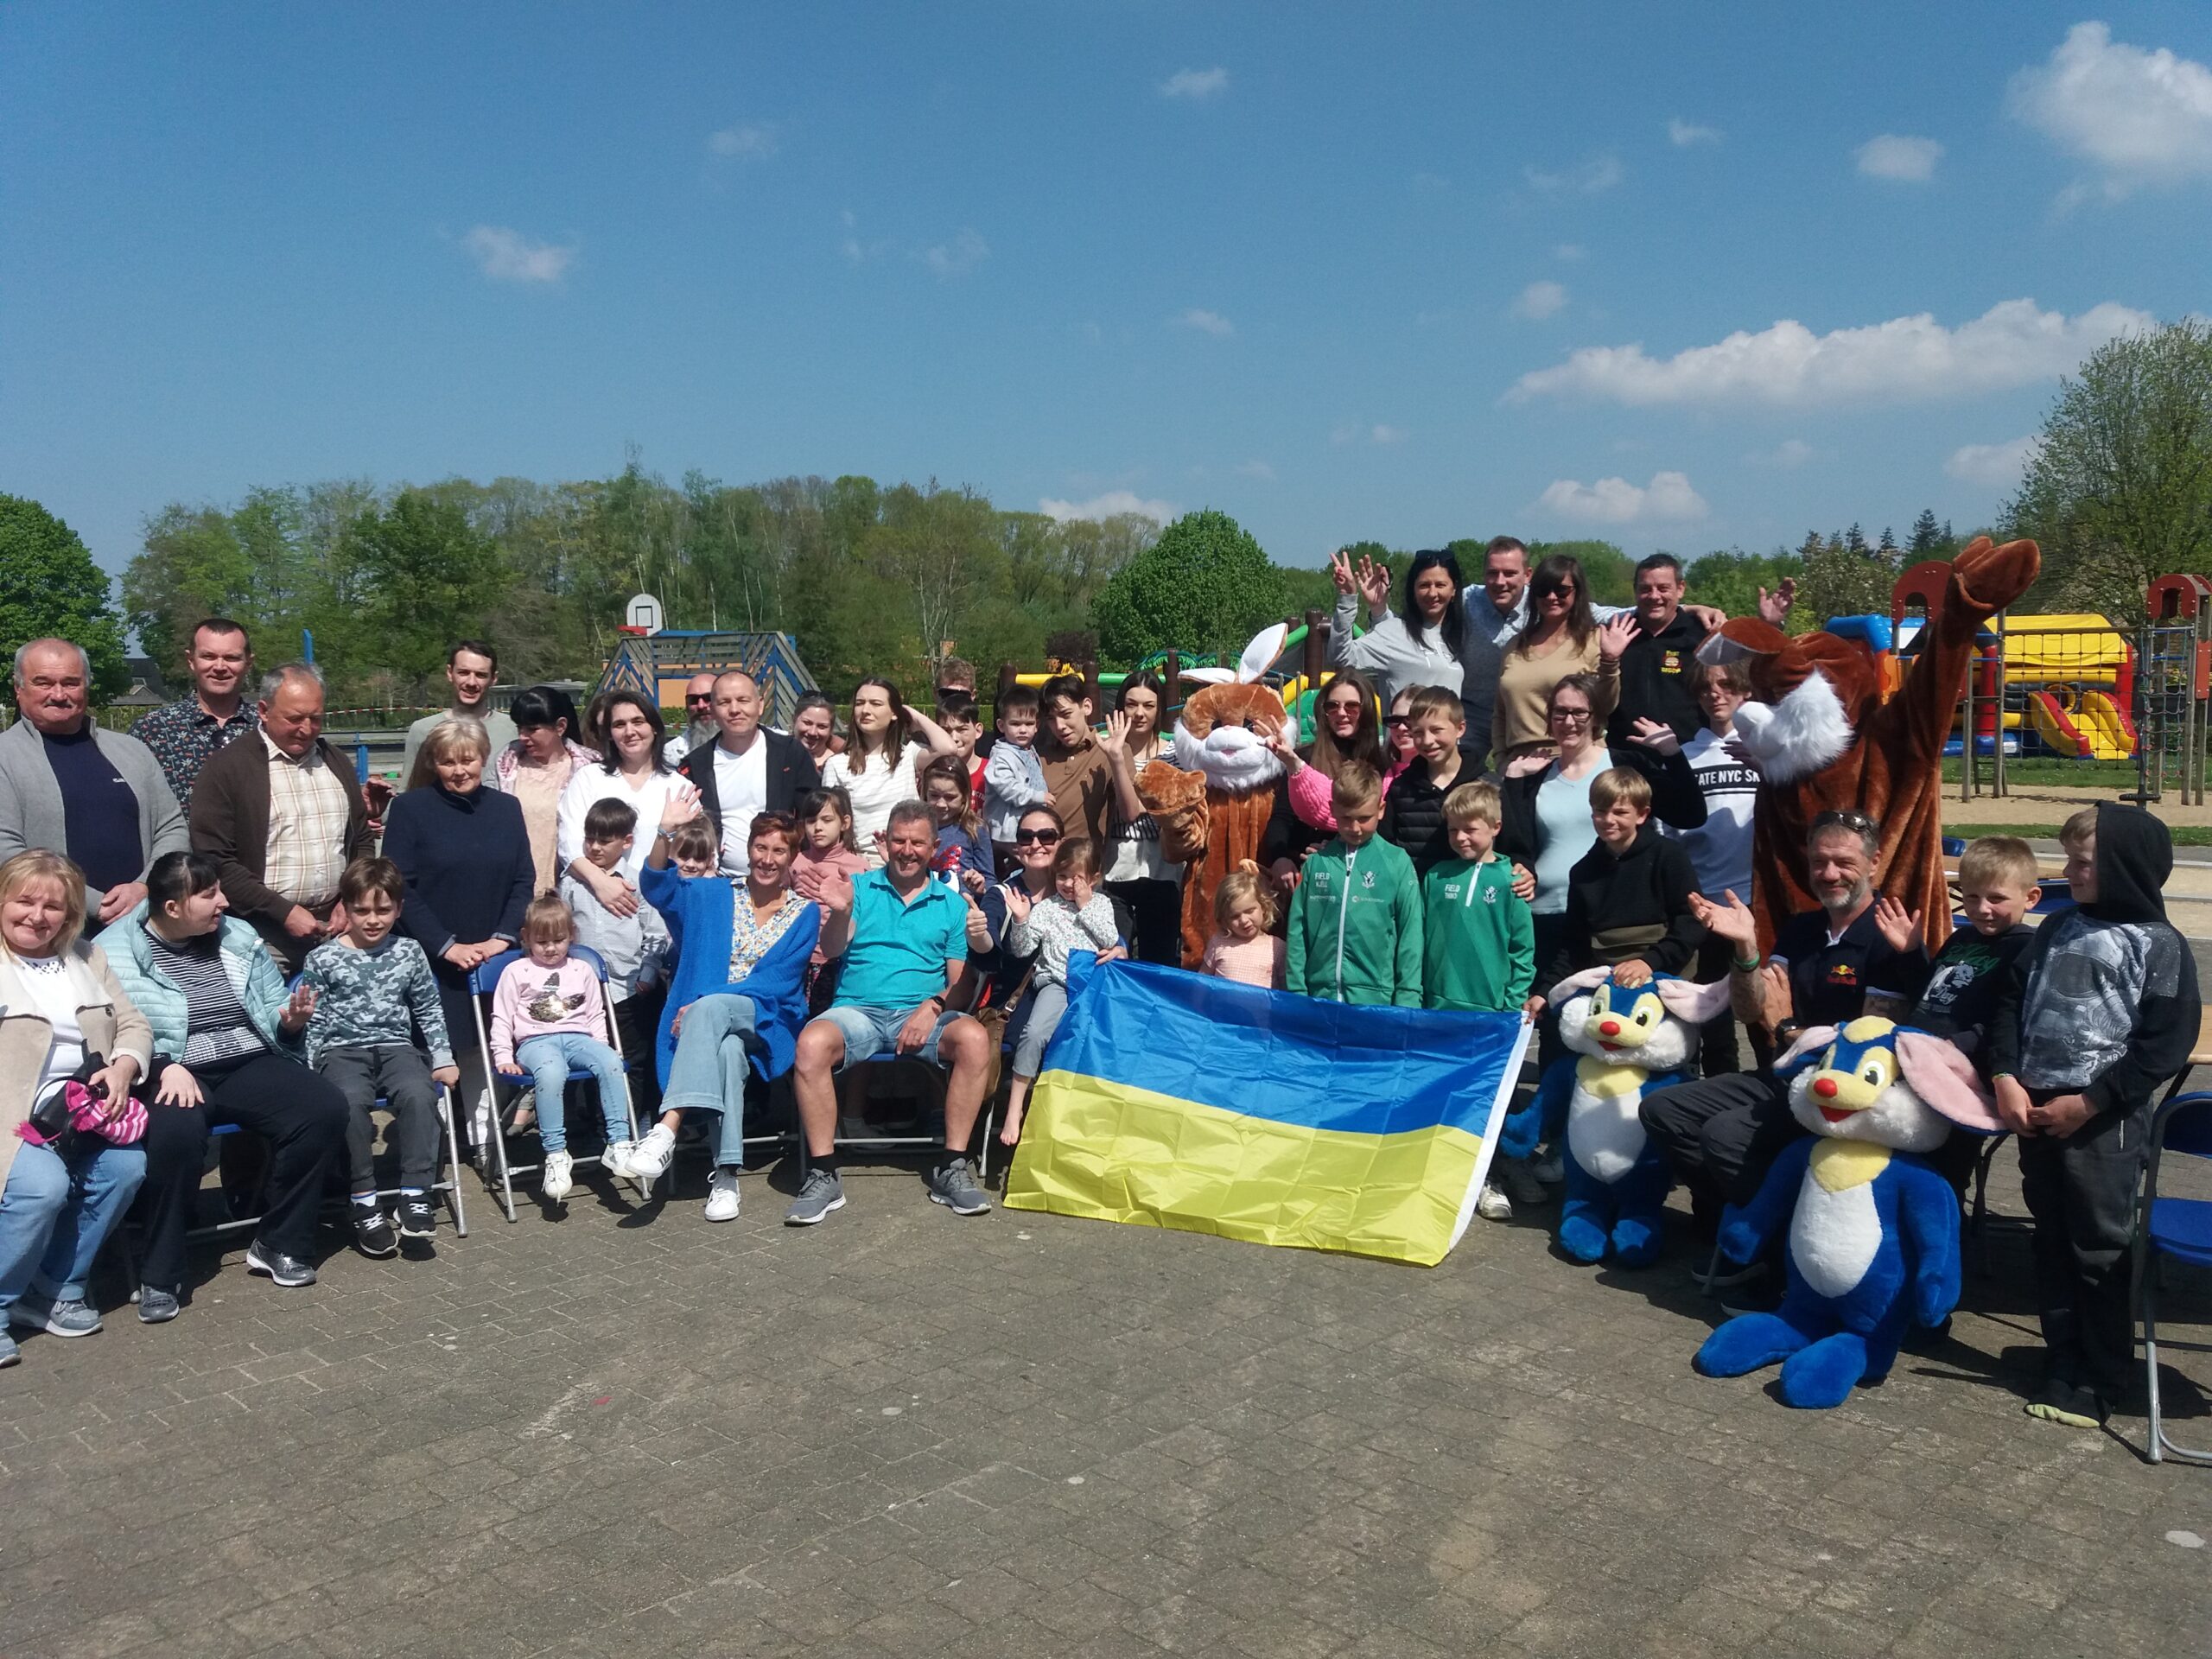 paasfeest voor Oekraïense vluchtelingen in Oostkamp